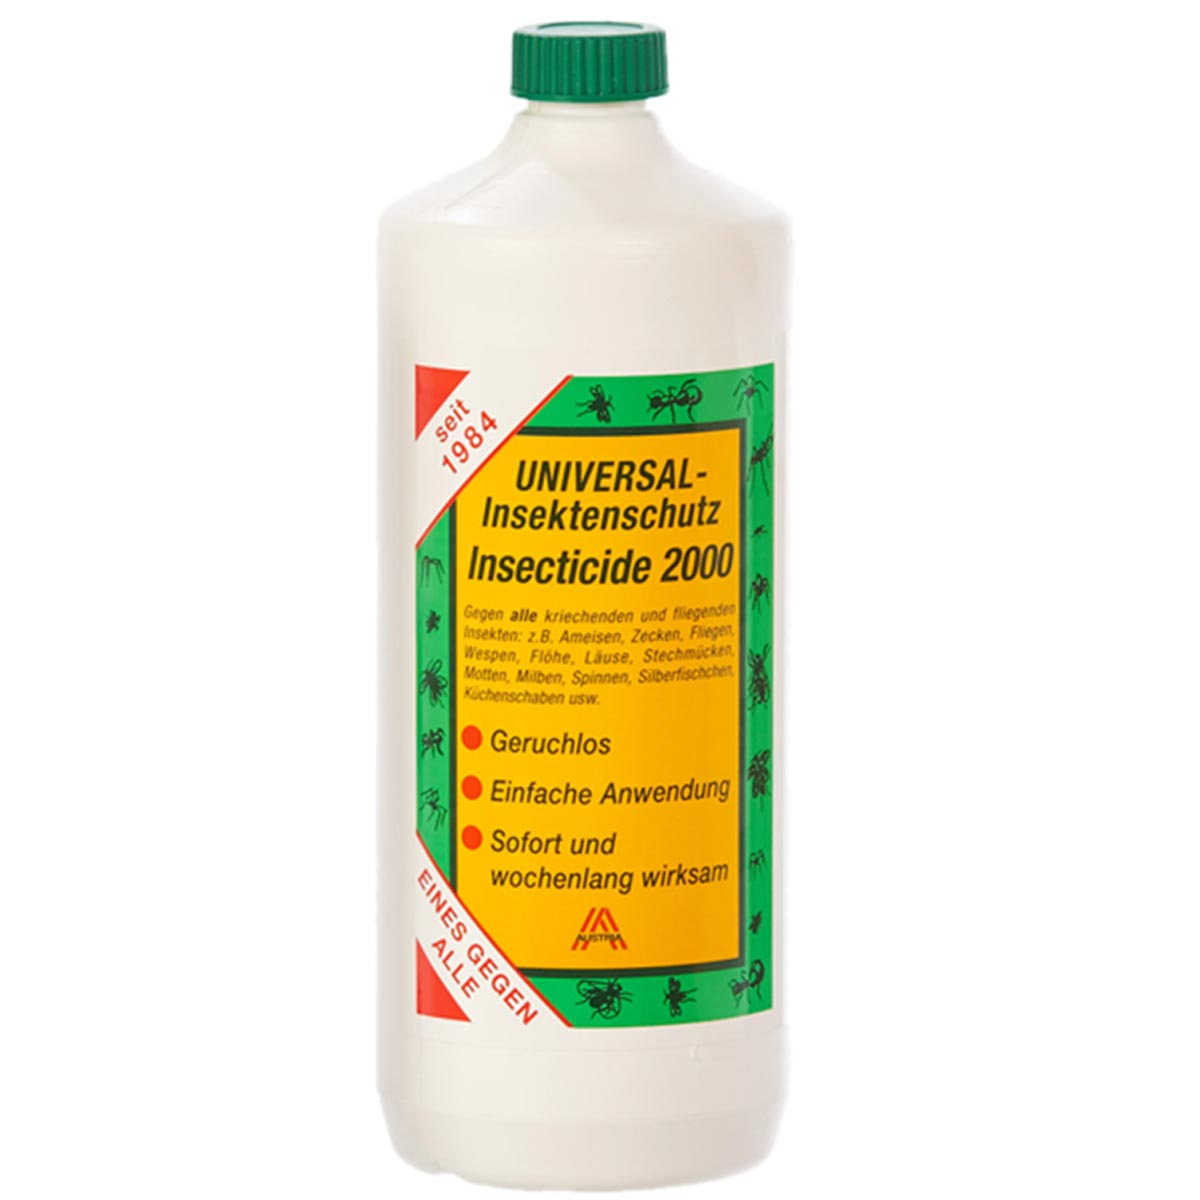 Insecticide 2000 Repellente spray universale contro insetti e parassiti